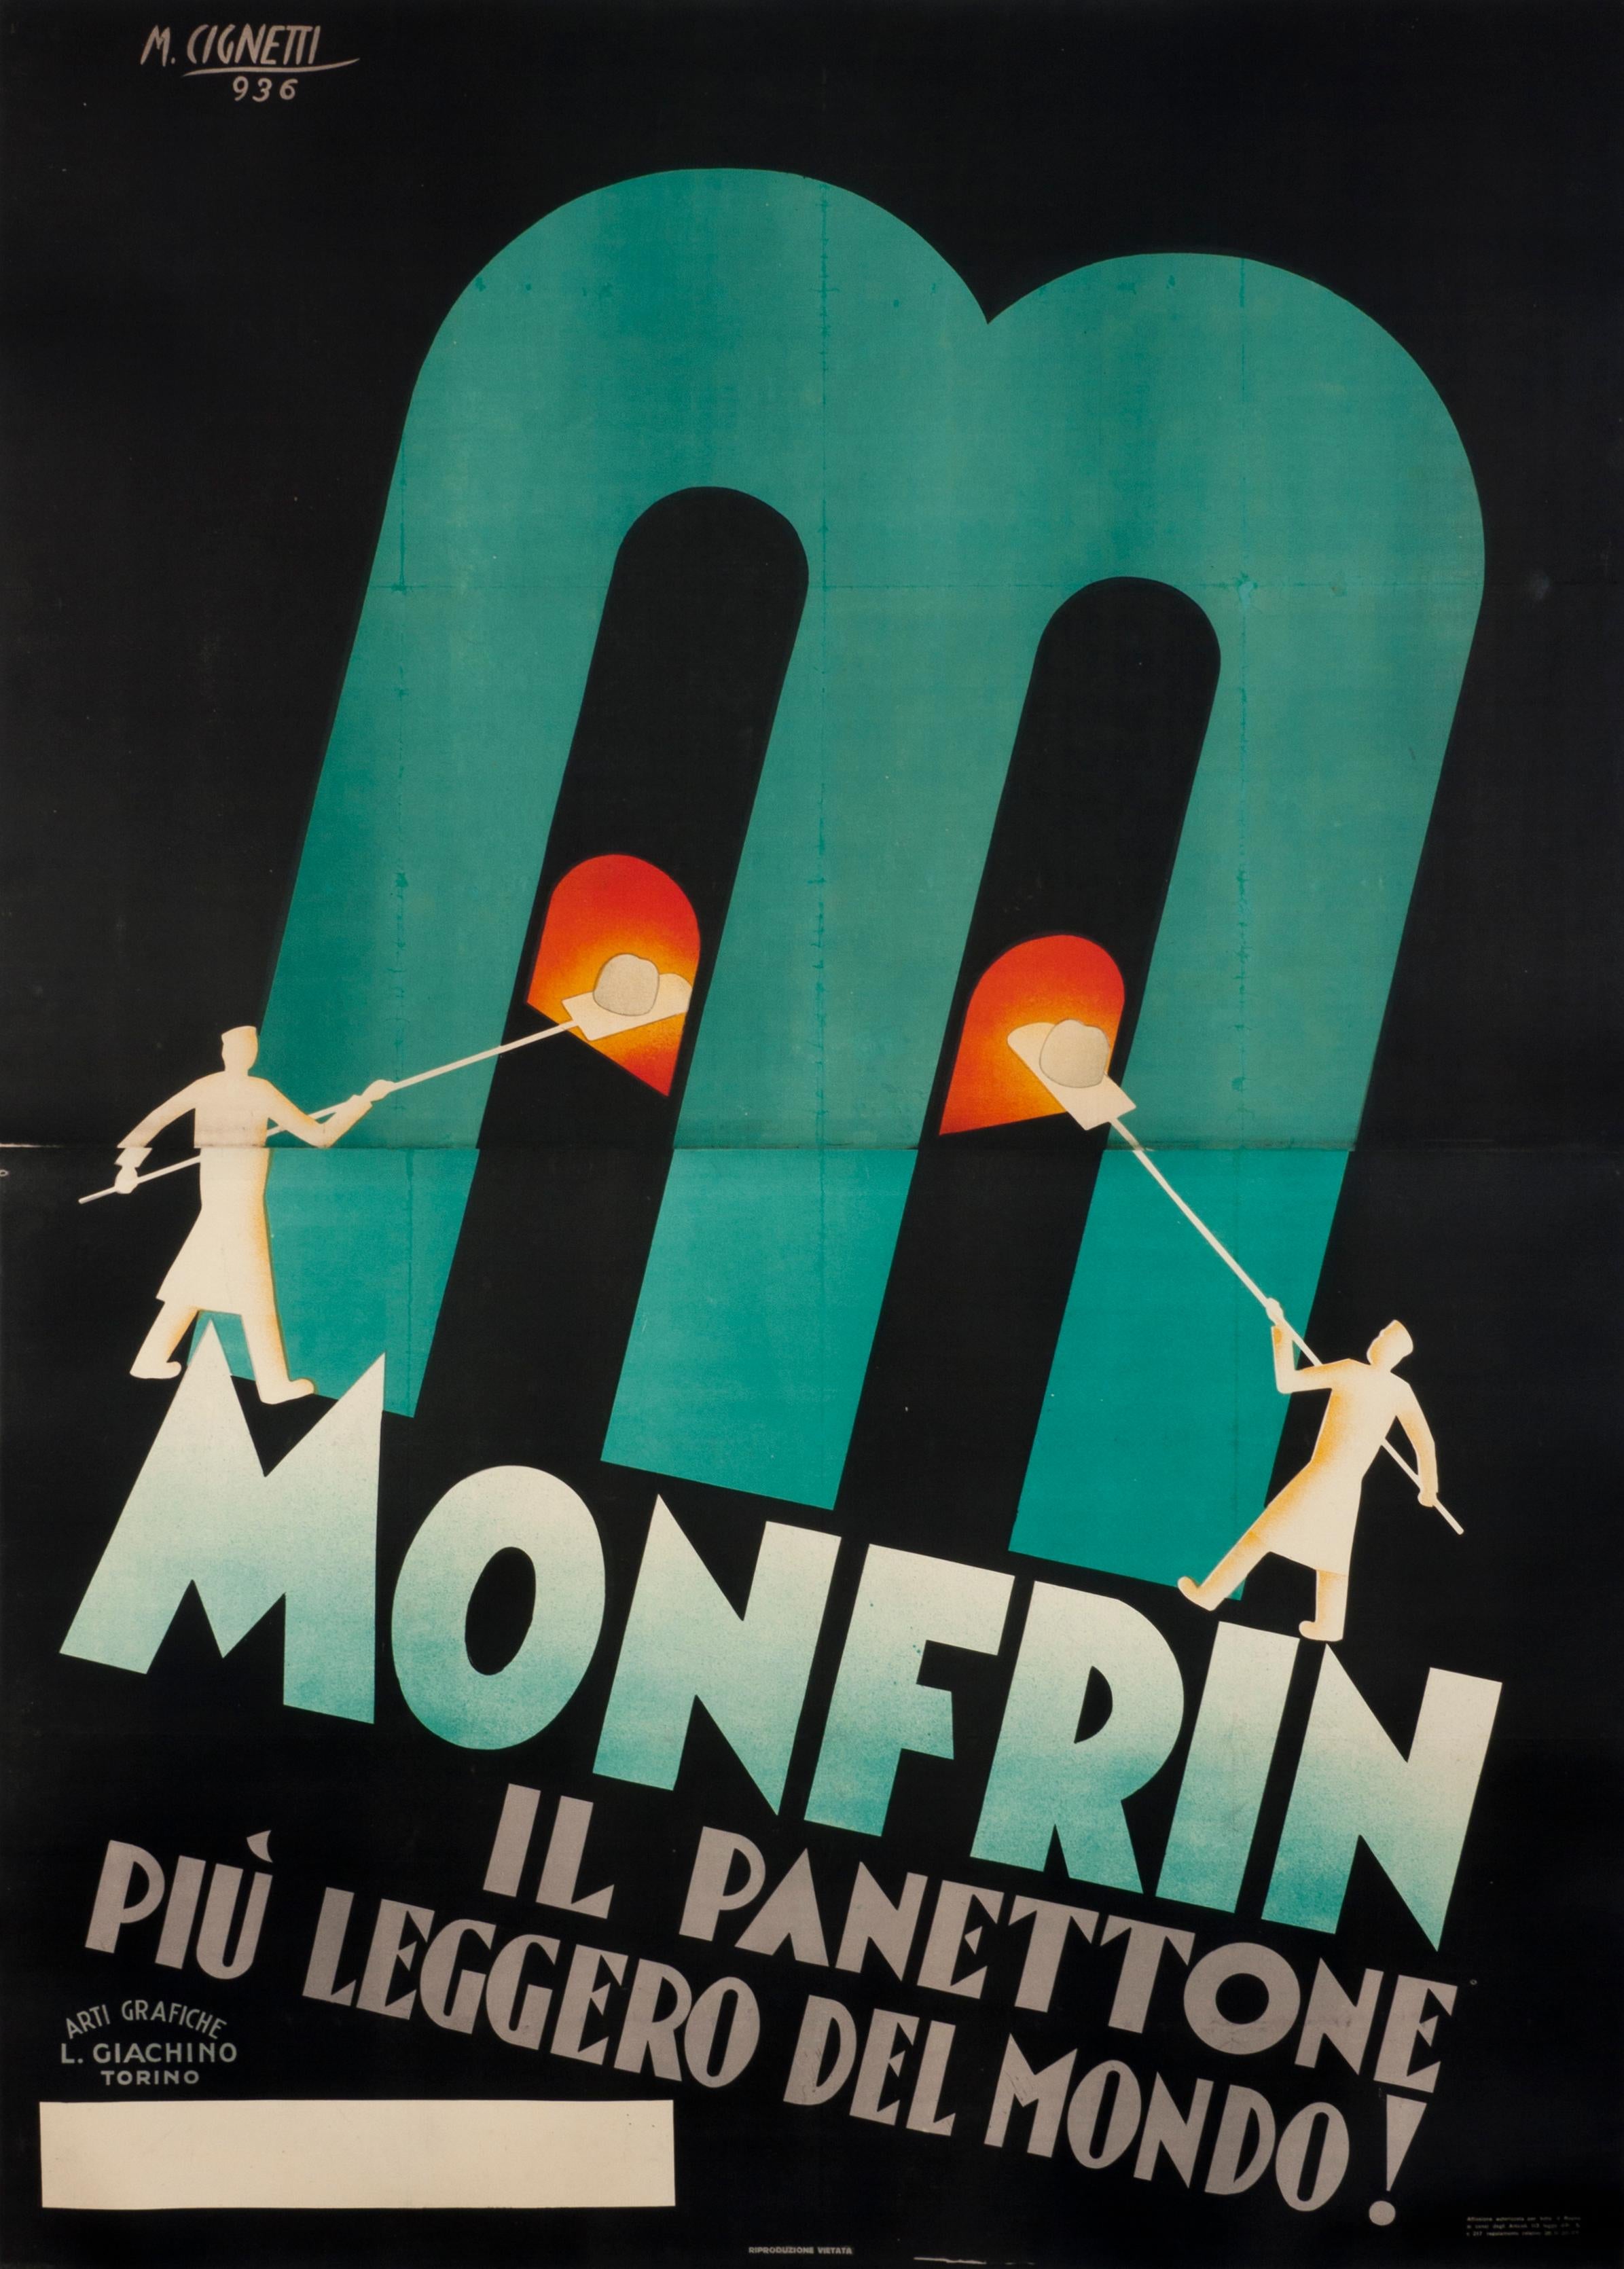 "Monfrin il panettone piu leggero del mondo!" Original Vintage Food Poster 1930s - Print by Michelangelo Cignetti